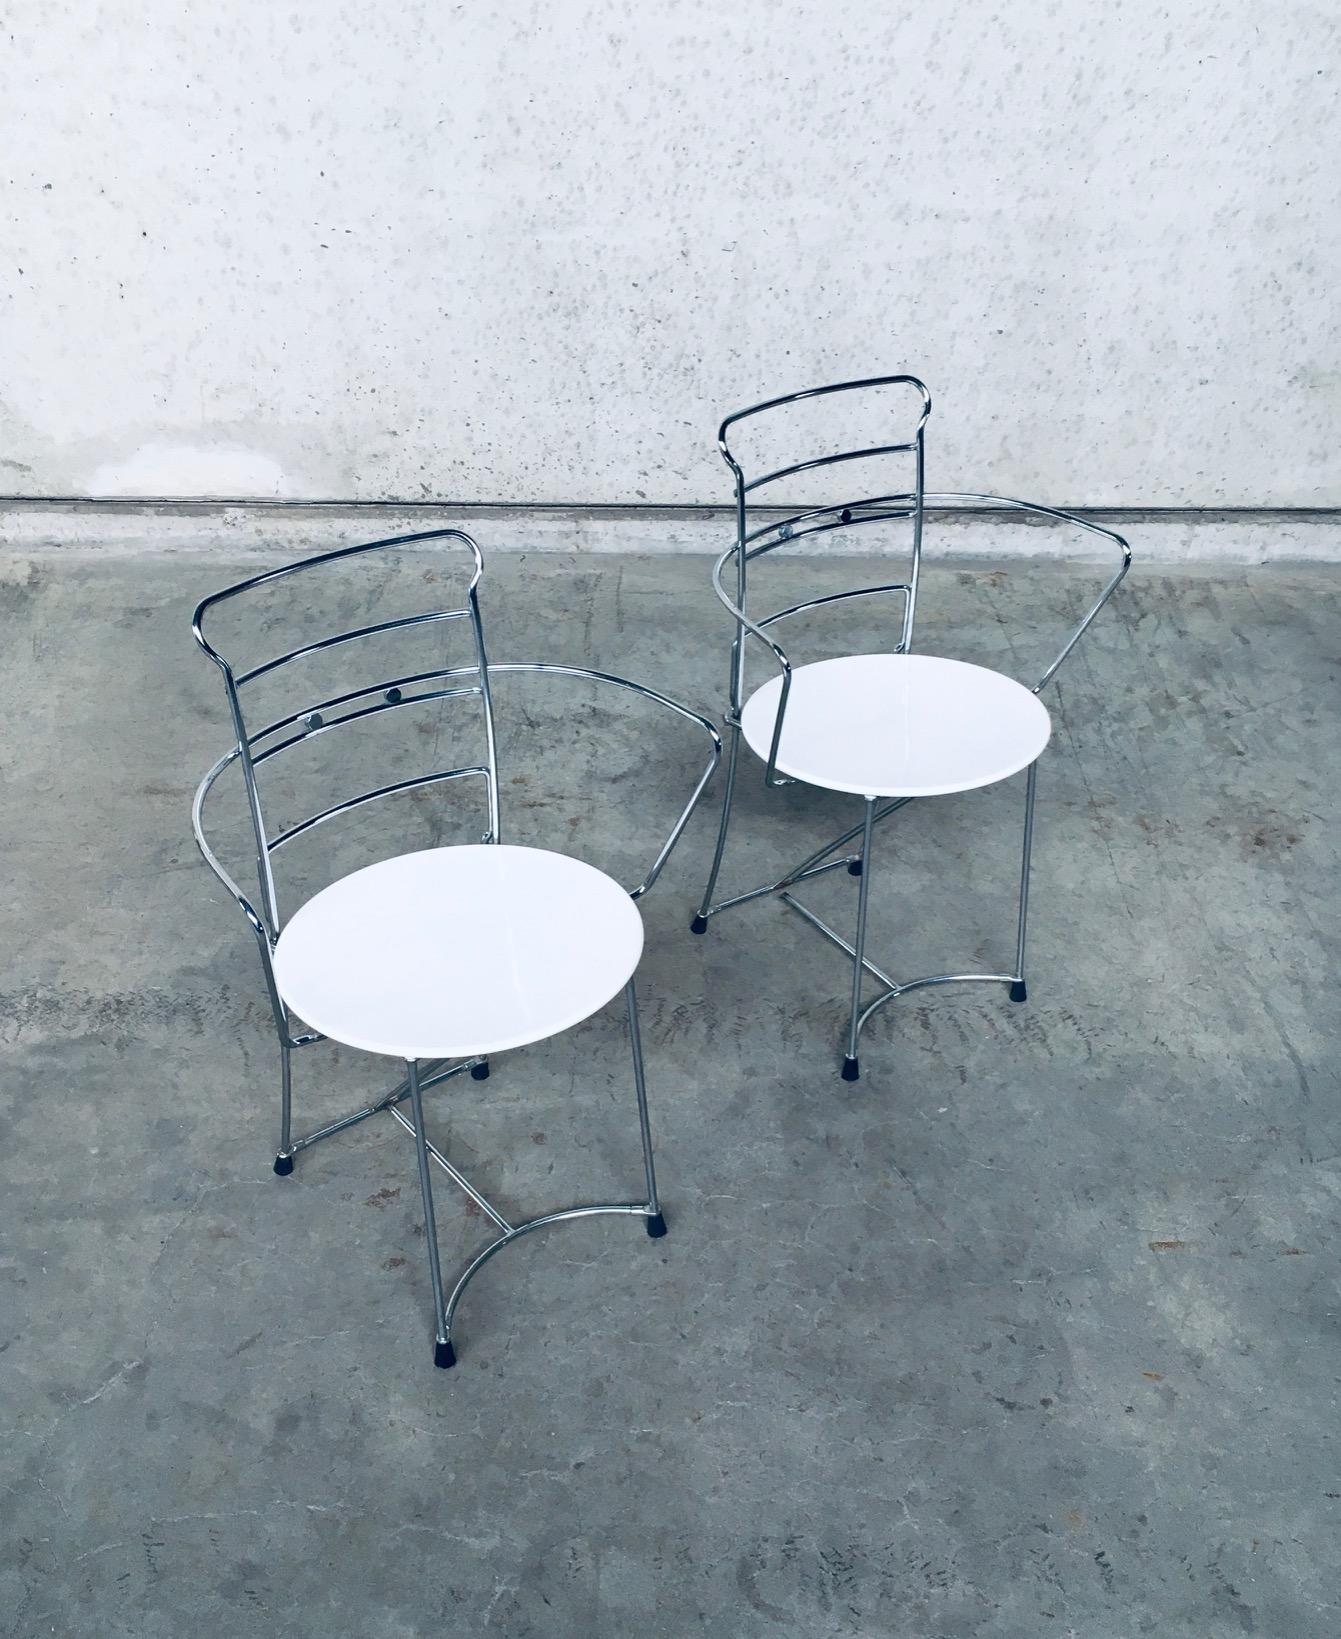 Vintage Postmodern Design Stuhl 2er Set, Modell Eridiana, entworfen von Antonio Citterio für Xilitalia, B&B Italia devision, Italien 1980er Jahre. Verchromtes Metallgestell mit weiß lackiertem Metallsitz, Version mit Armlehne. In sehr gutem Zustand.